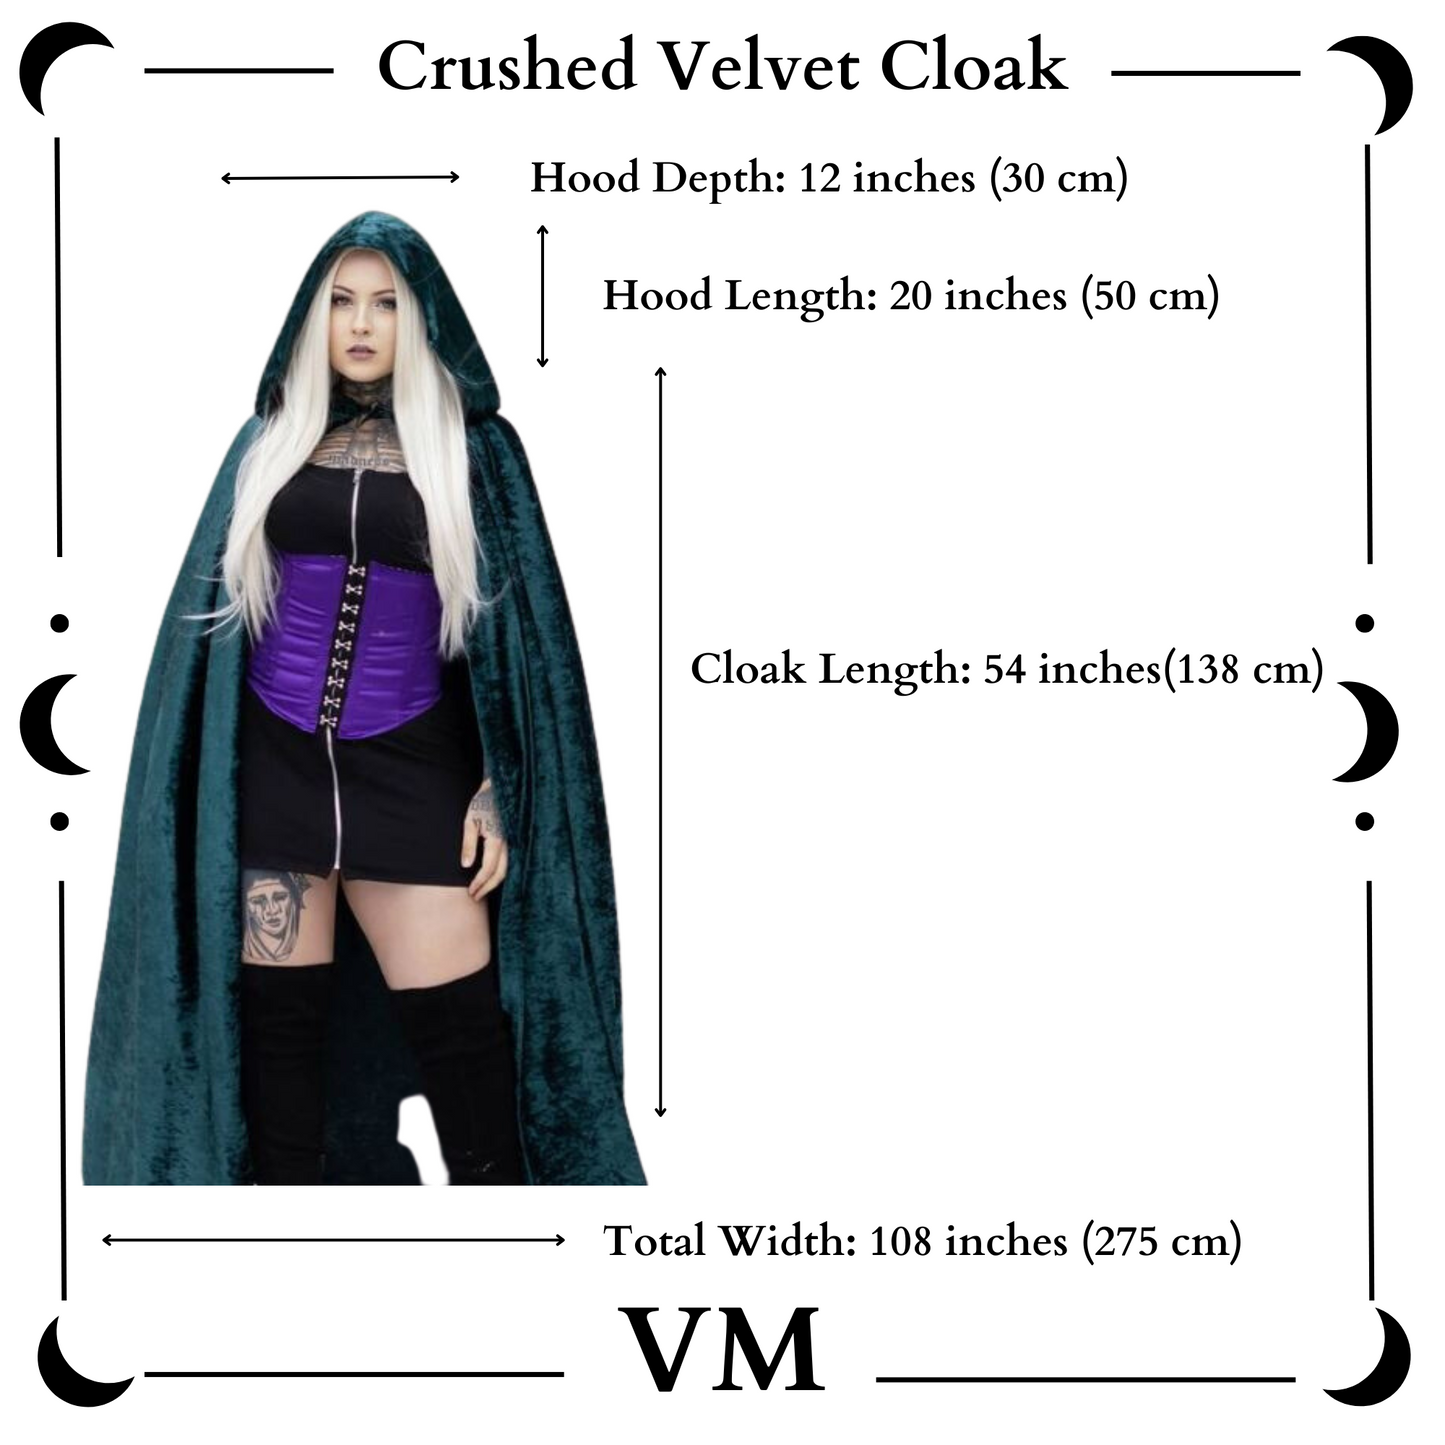 The VM Crushed Velvet Cloak